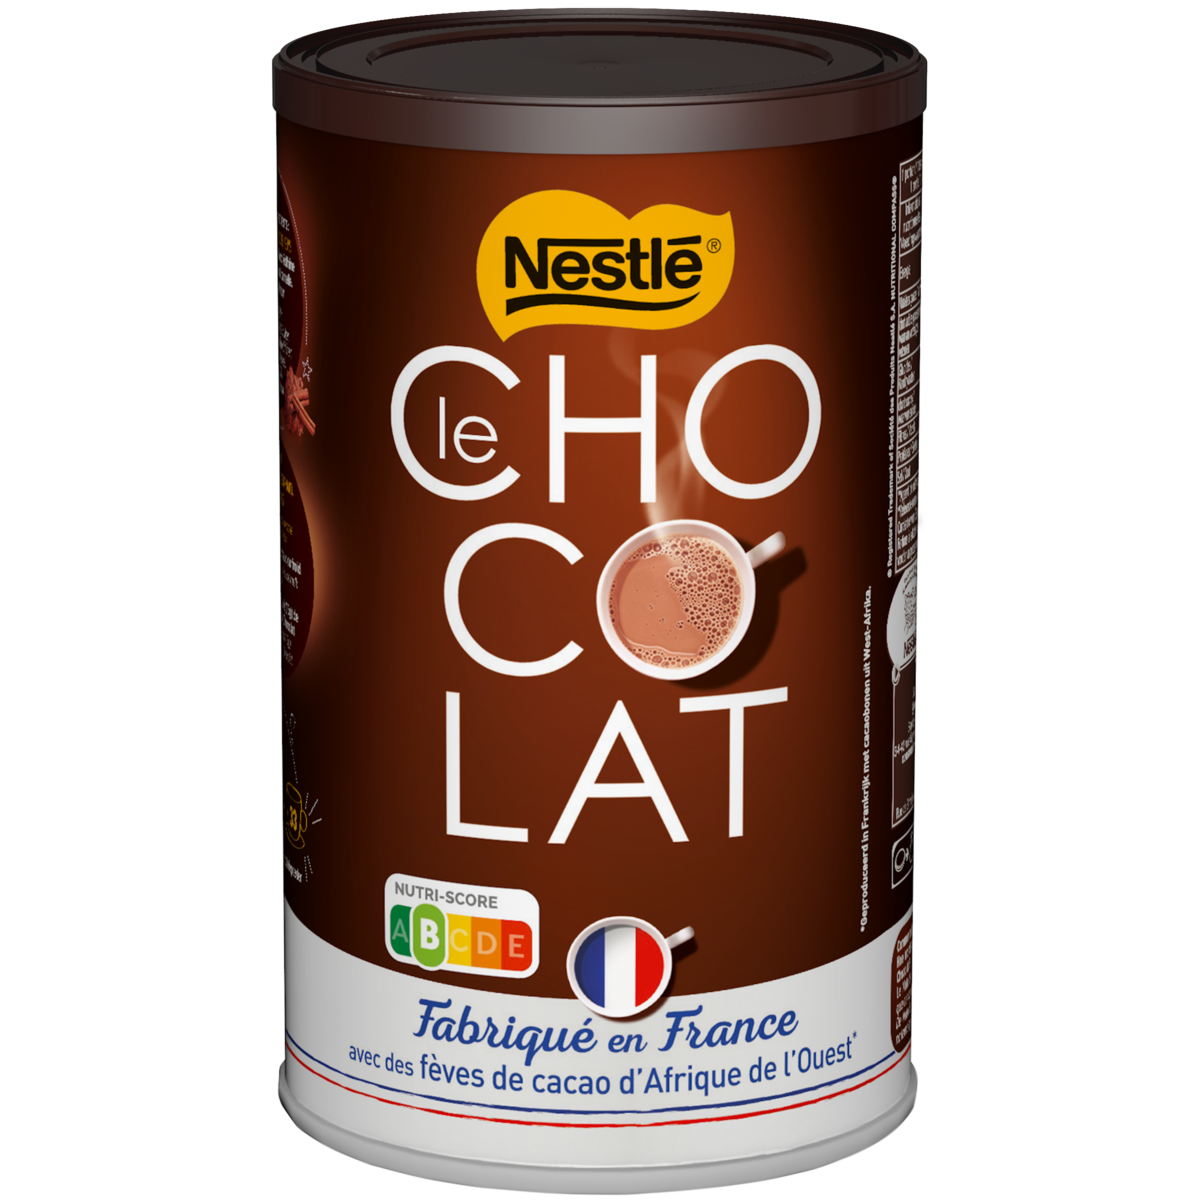  Le chocolat en poudre Nestlé aux fèves de cacao d'Afrique de l'Ouest - 500g